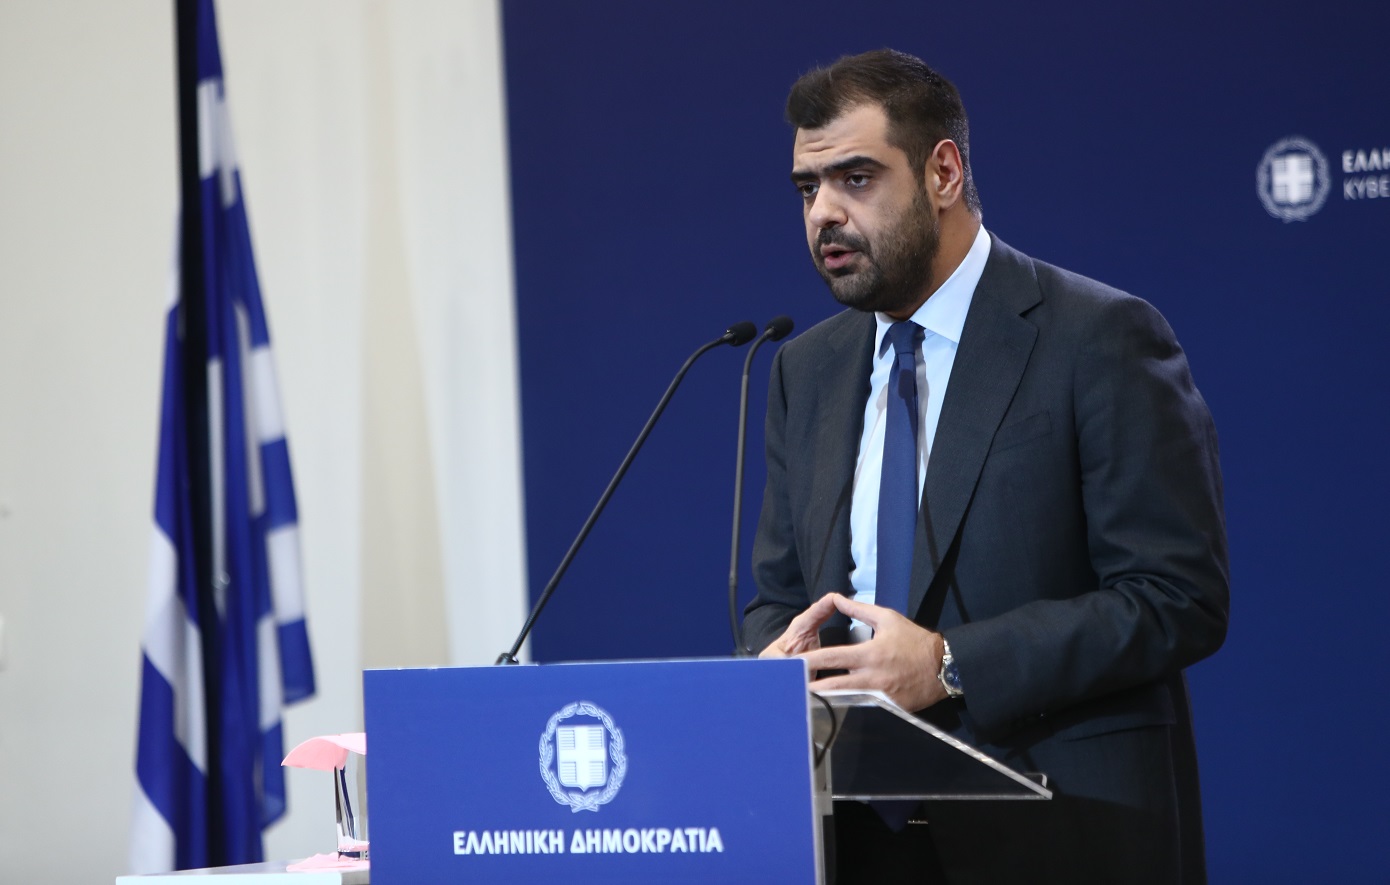 Τι απαντά η ελληνική κυβέρνηση για την αναγνώριση παλαιστινιακού κράτους